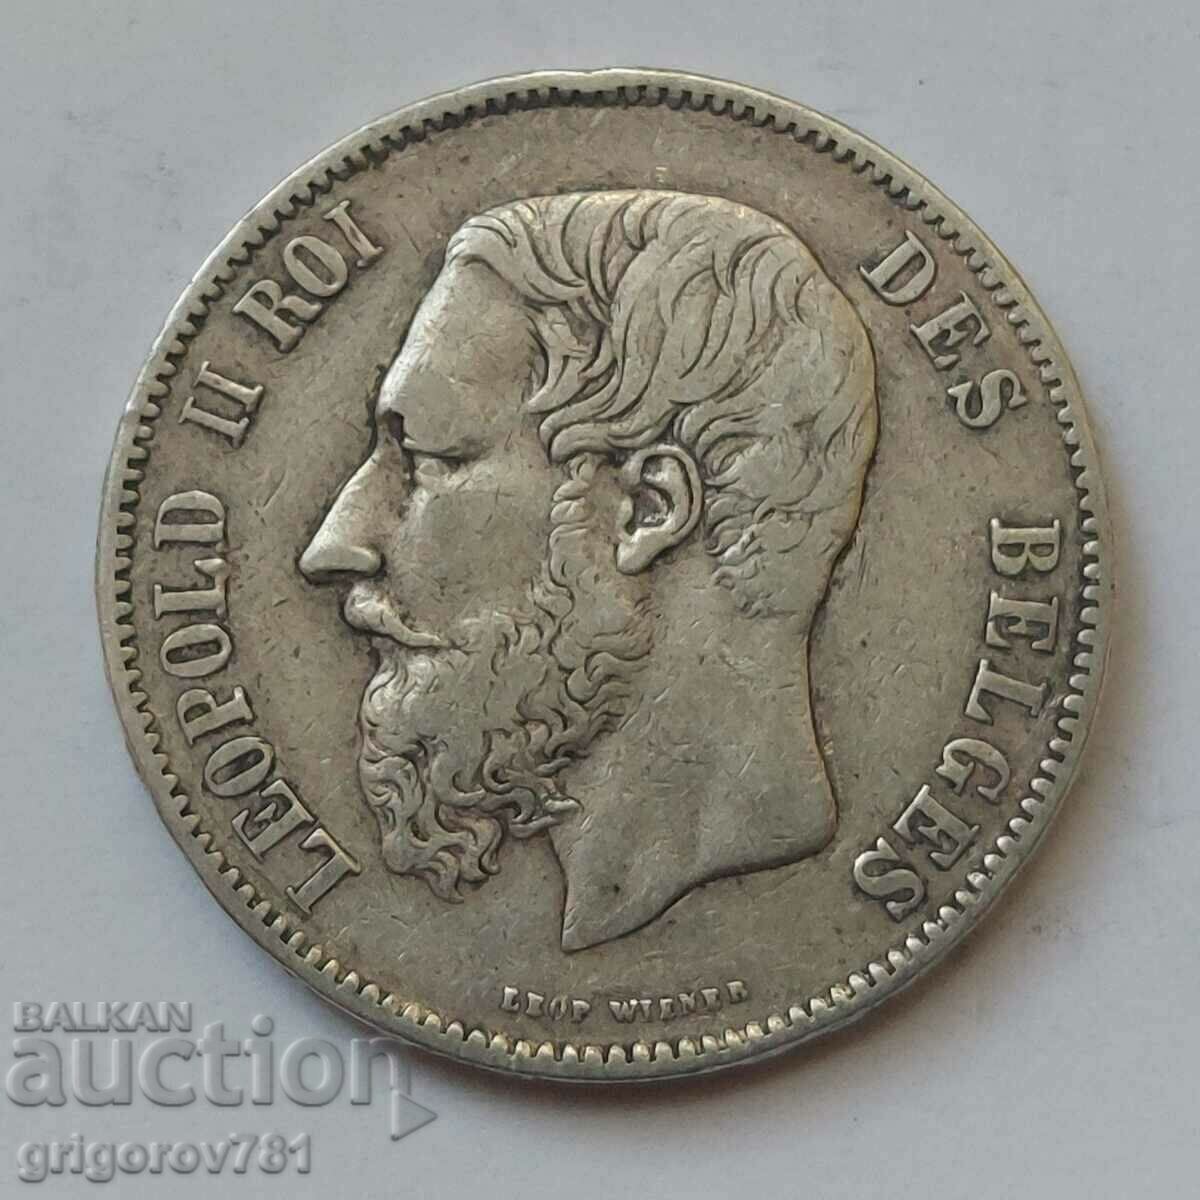 5 Francs Silver Belgium 1869 Silver Coin #163